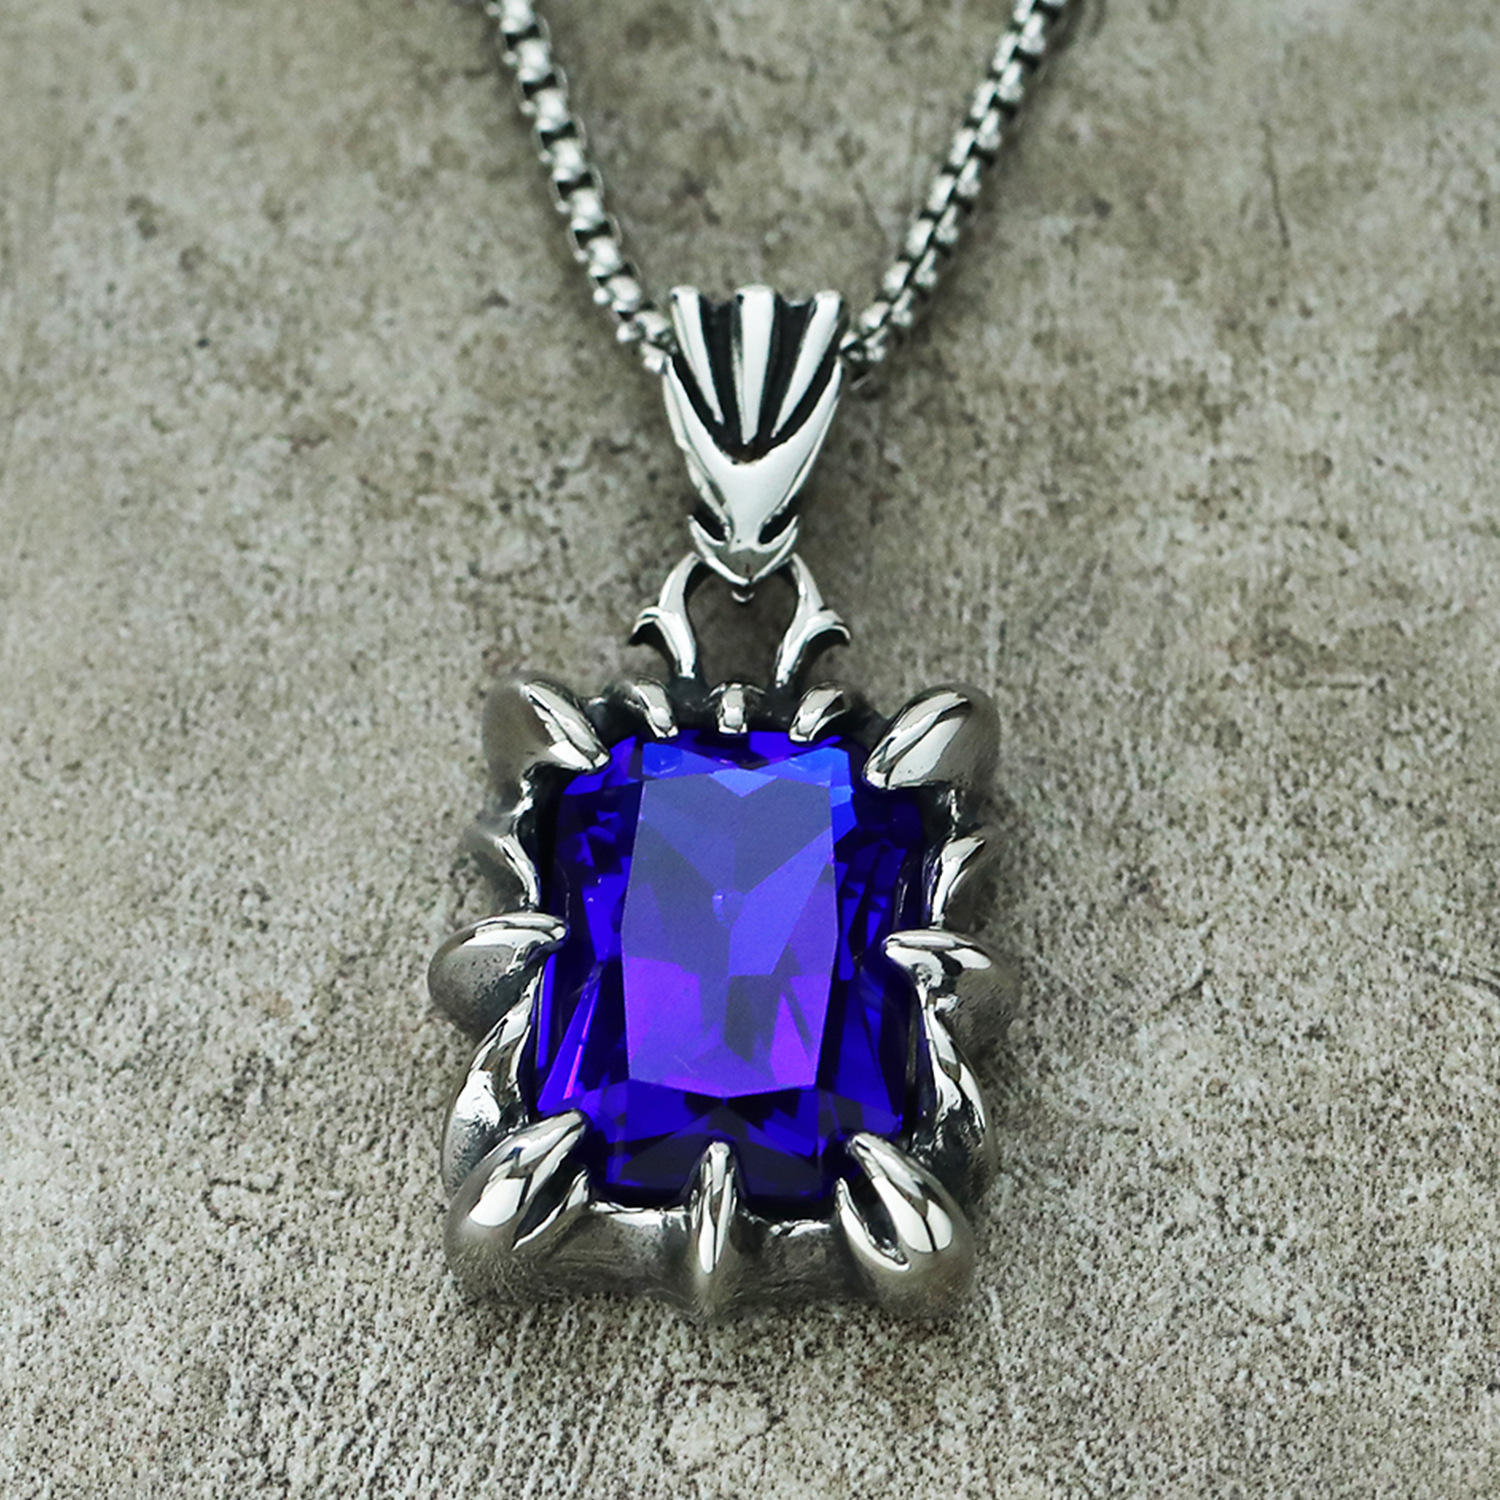 4:Blue necklace 60cm